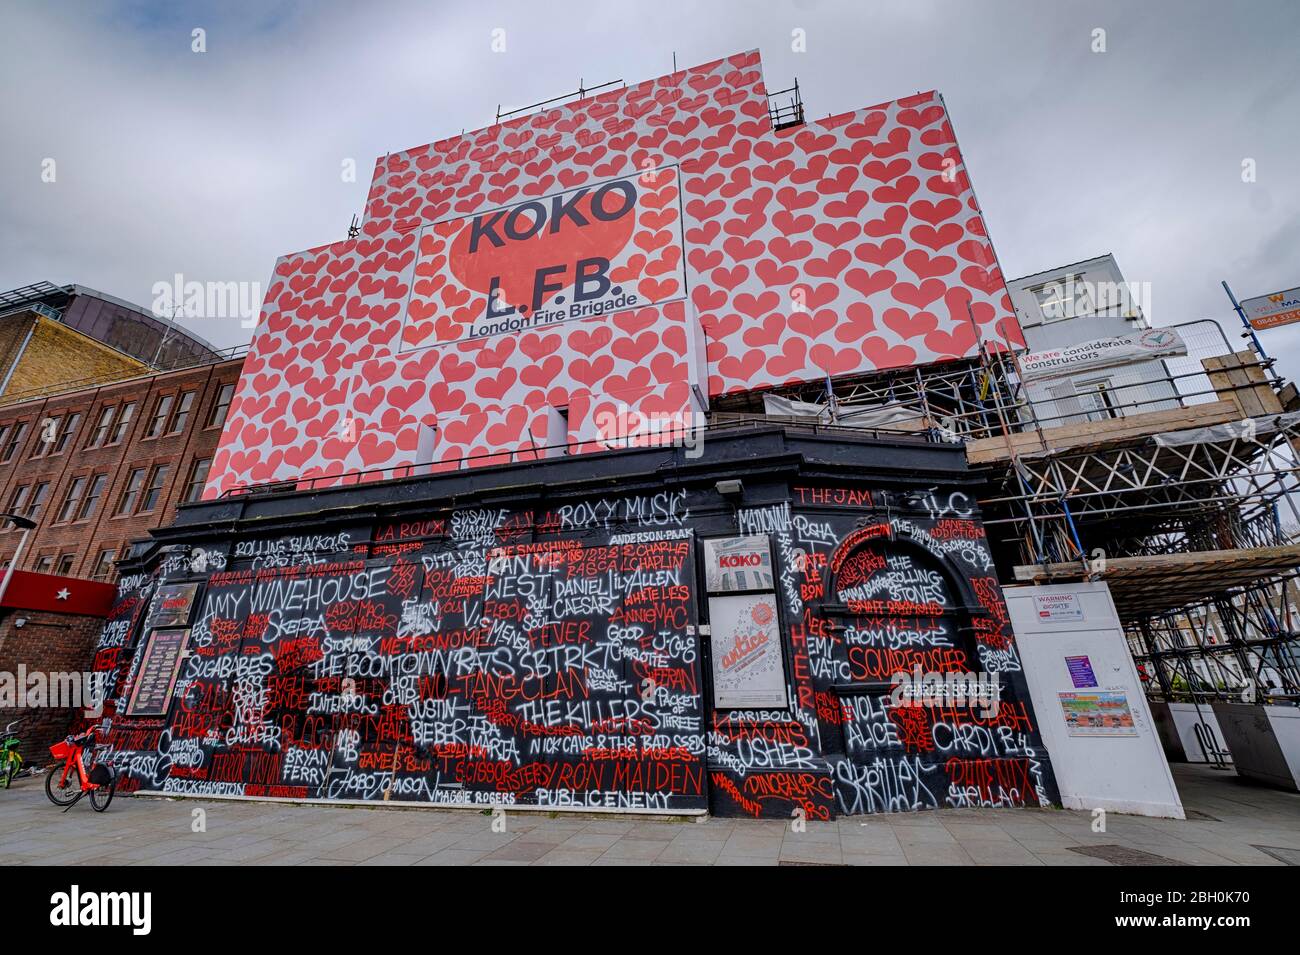 Koko-Musikhalle in Camden Town, vorübergehend mit einer Botschaft an die Londoner Feuerwehr bekleidet, die im Januar 2020 dazu beigetragen hat, das Gebäude vor dem Feuer zu retten Stockfoto